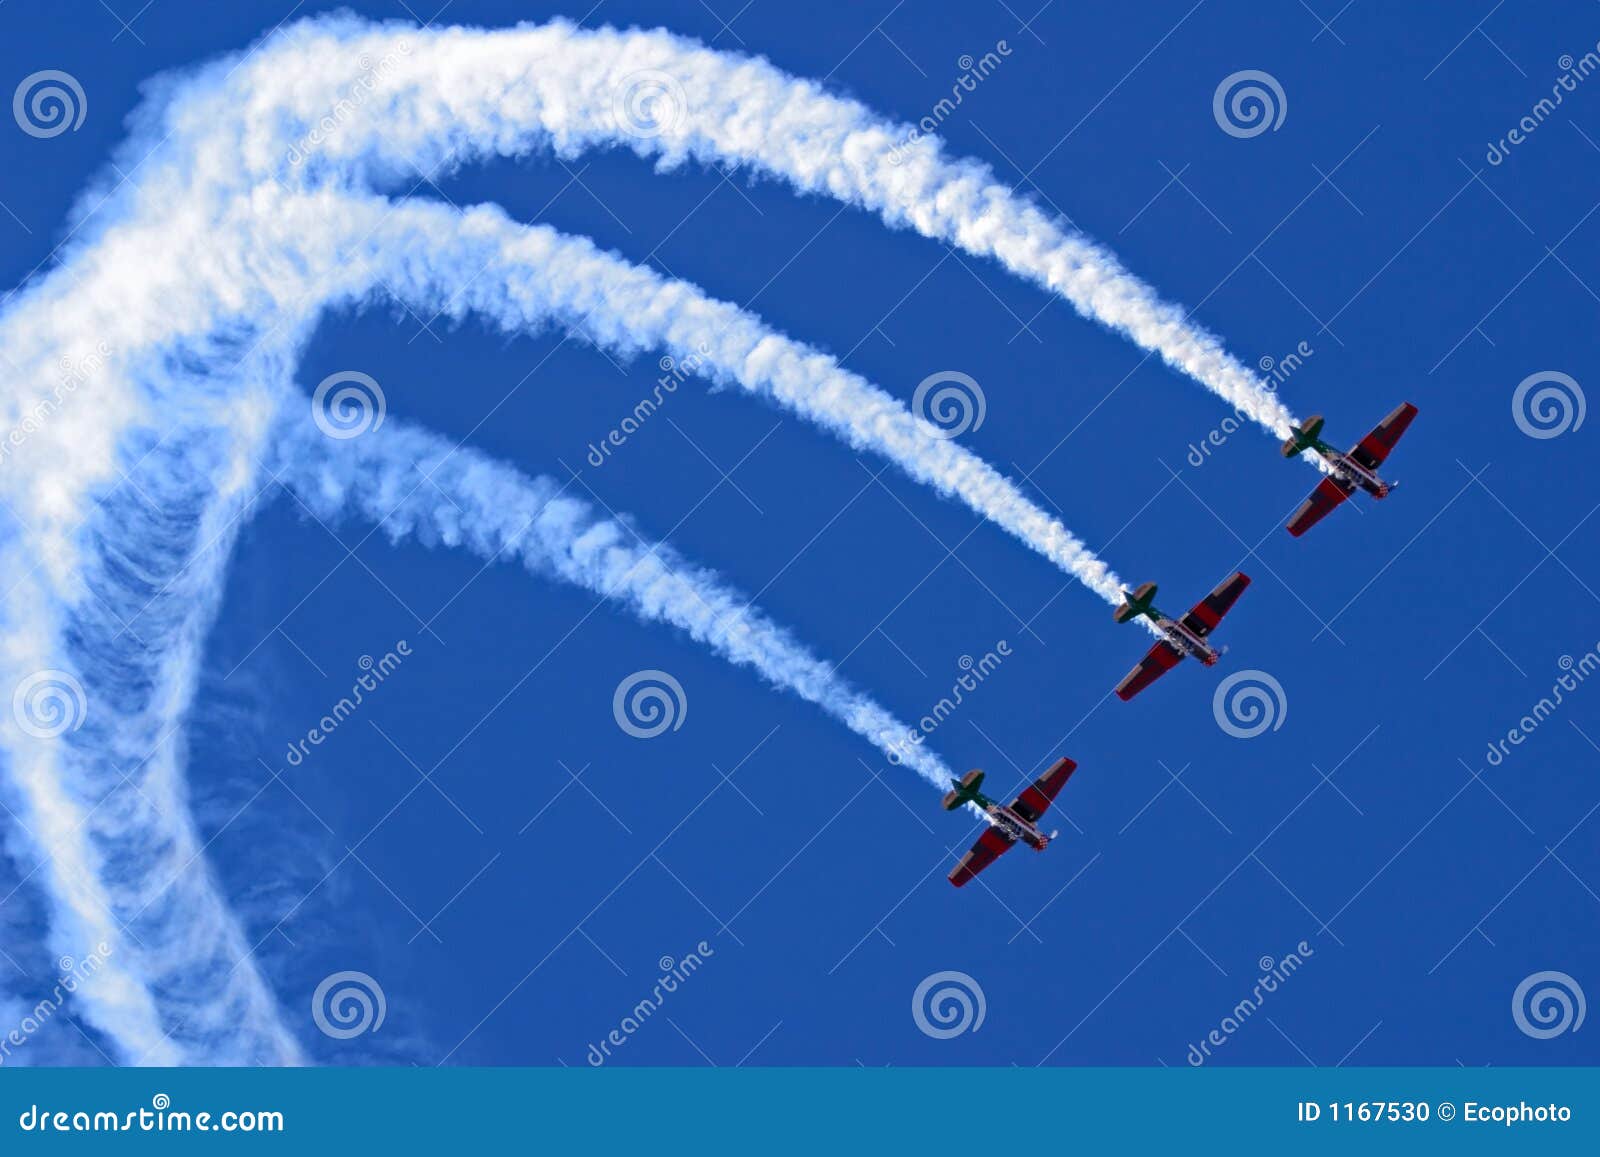 aerobatic display